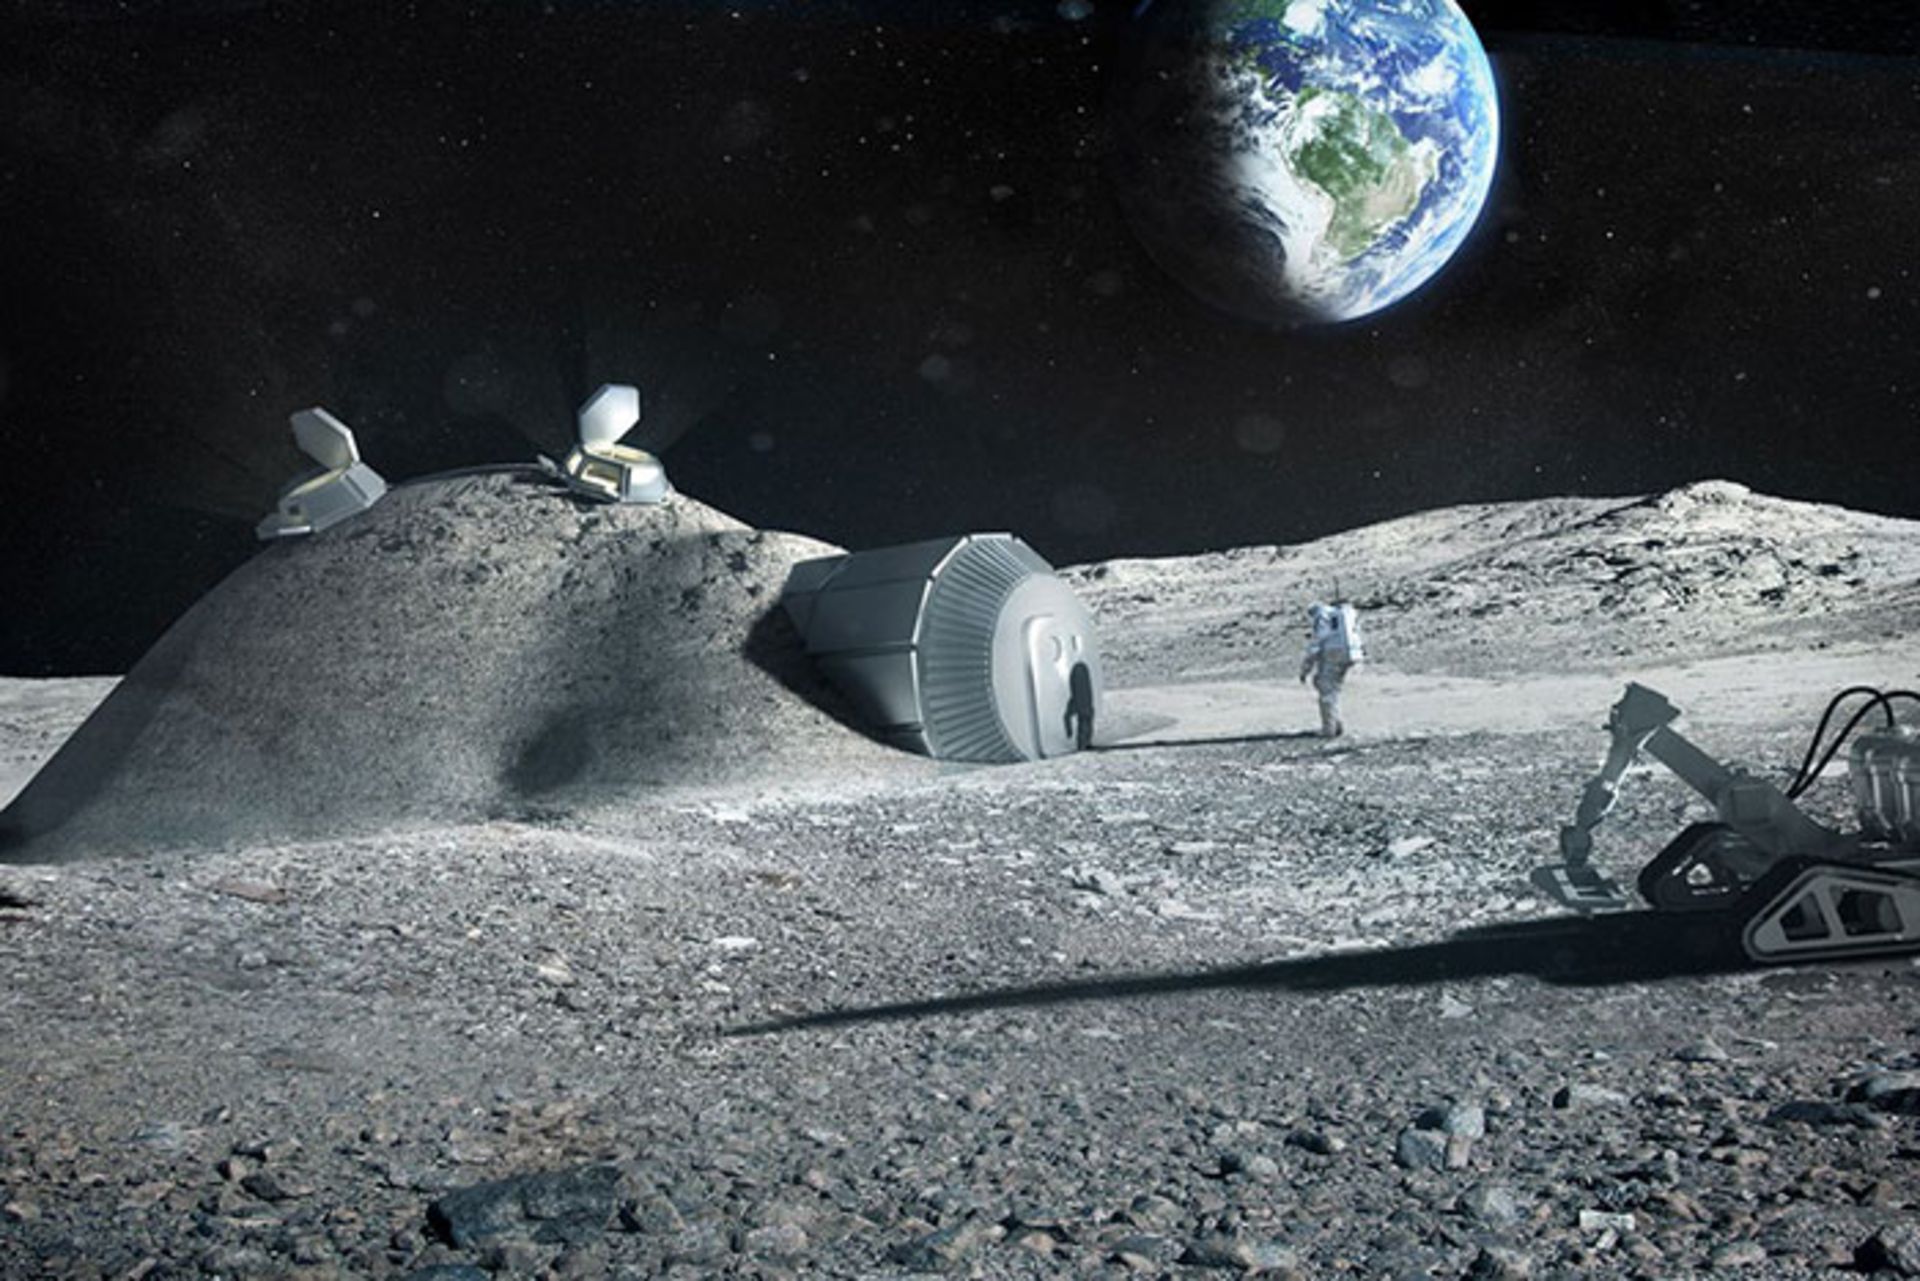 مرجع متخصصين ايران پايگاه ماه / Moon Base